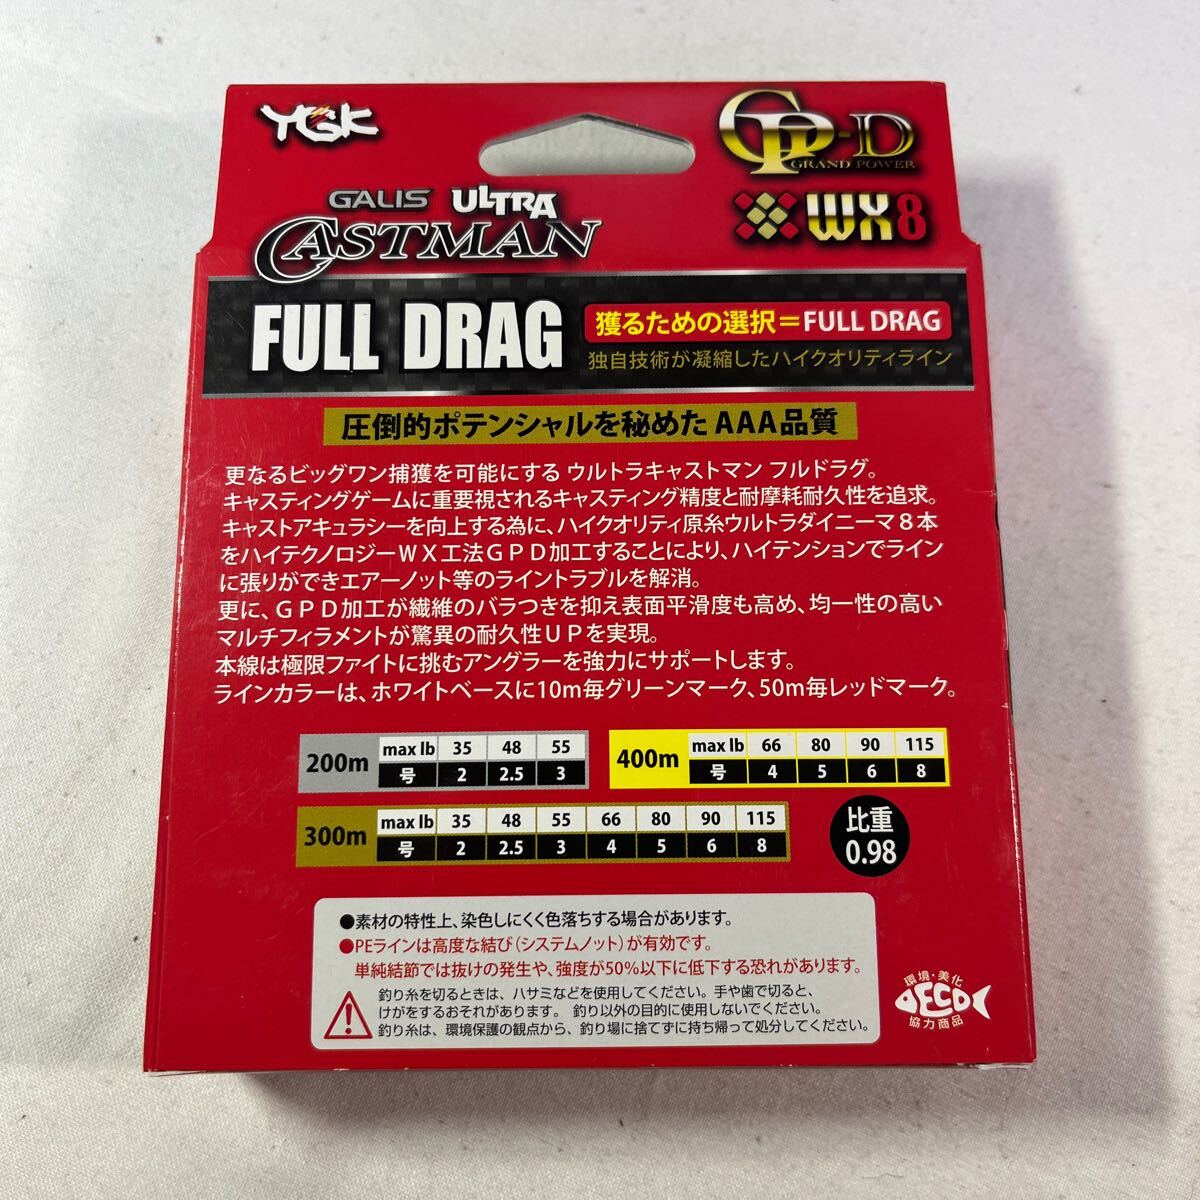 ガリス ウルトラキャストマン FULL DRAG WX8GP-D 2.5号 200m【新品未使用品】N9131の画像2